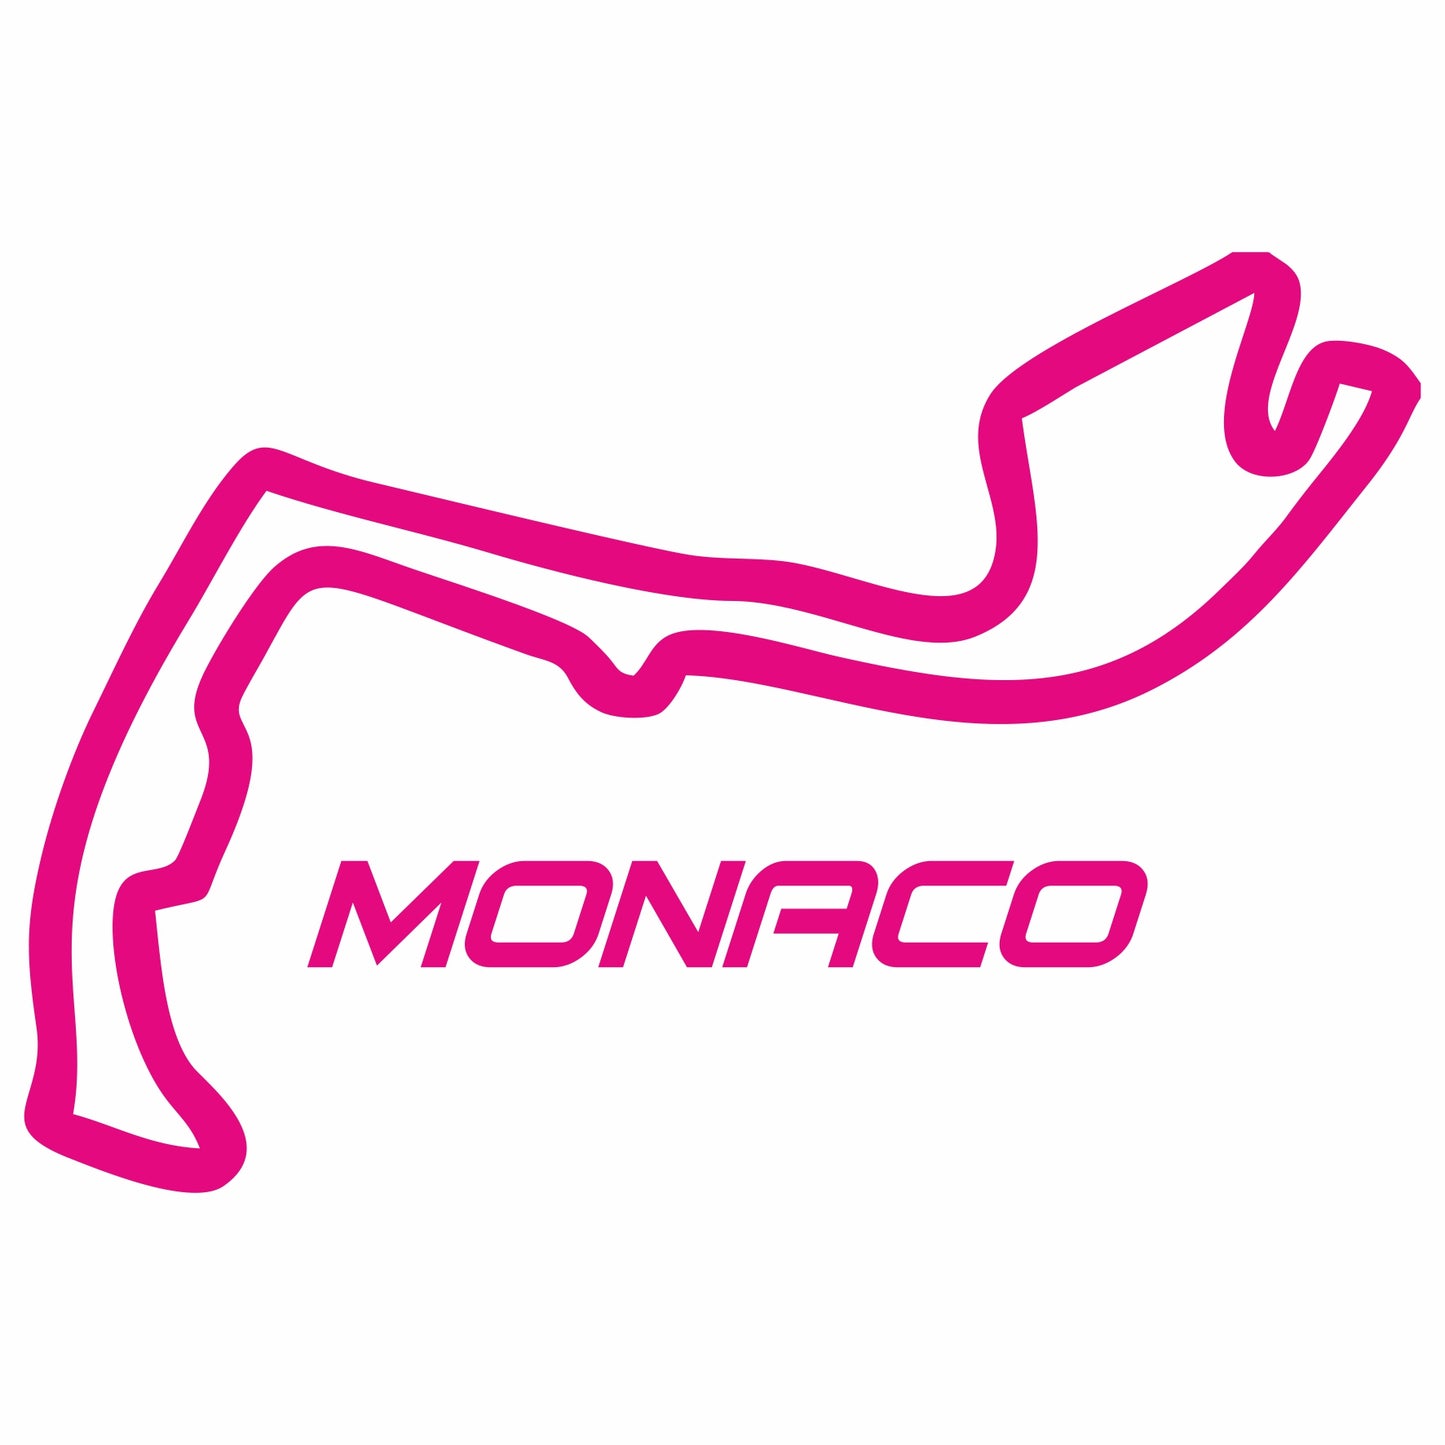 Monaco Sticker